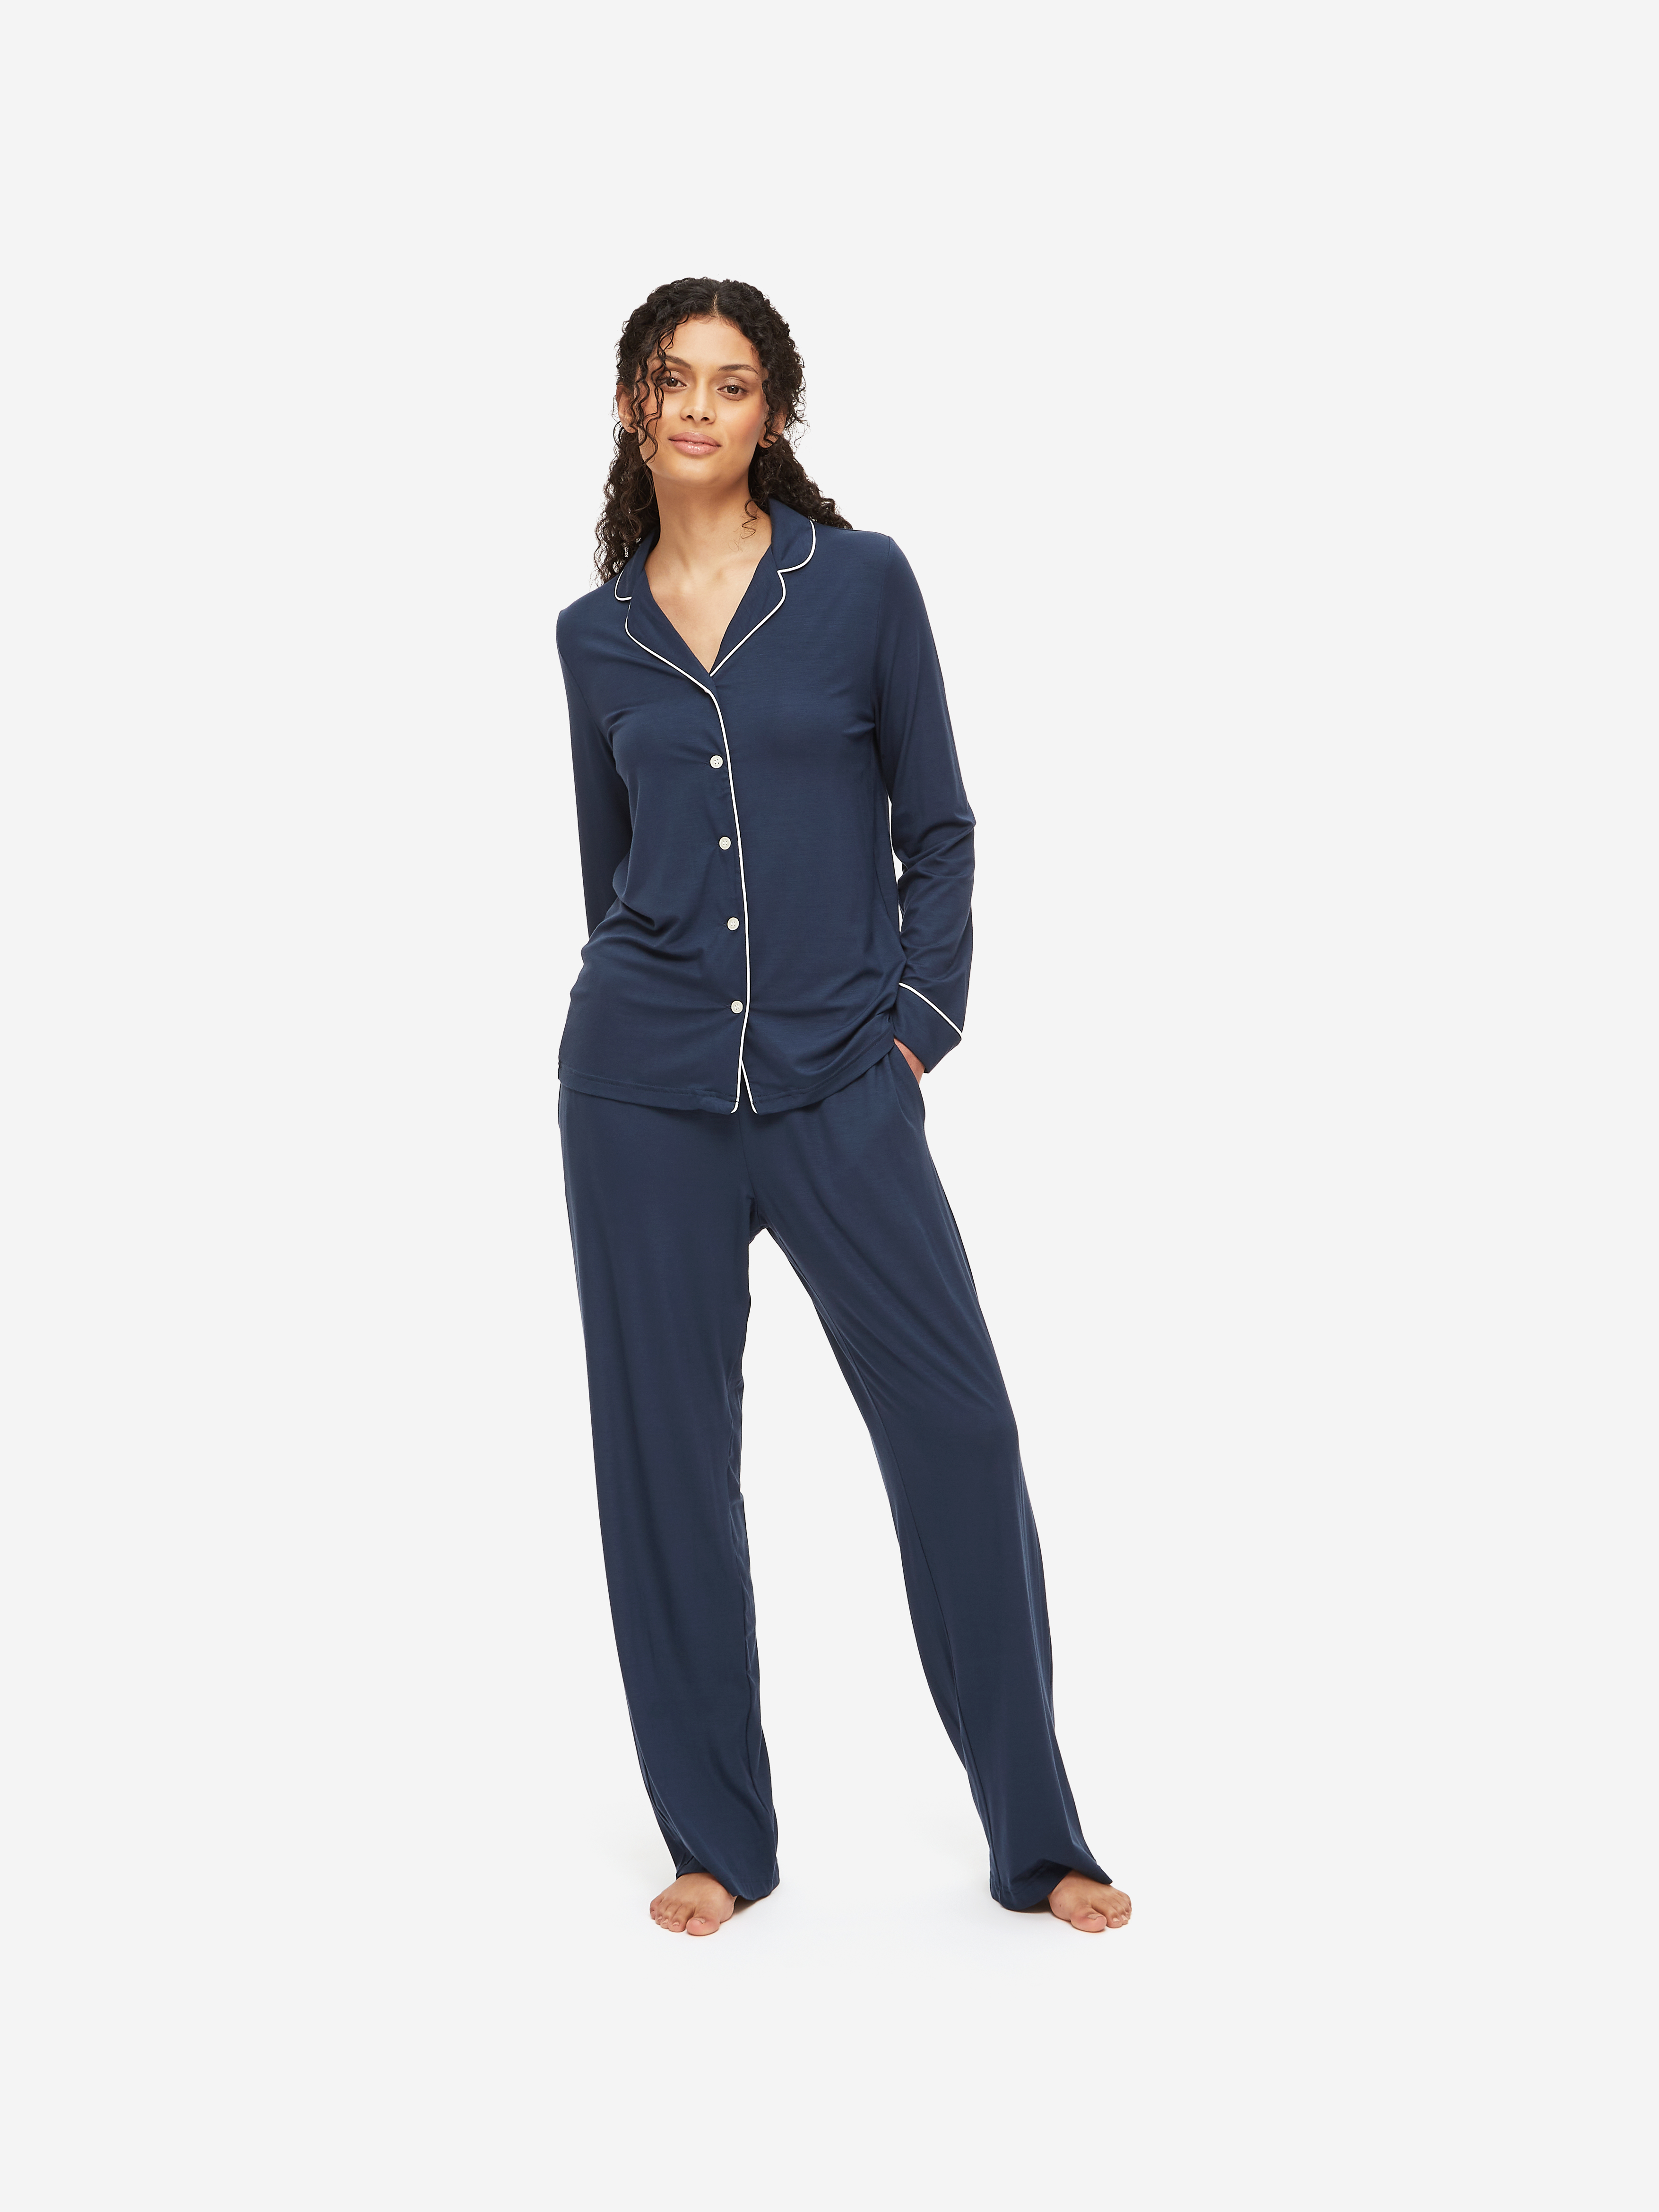 Lara Micro Modal Stretch Navy Women's Pyjamas